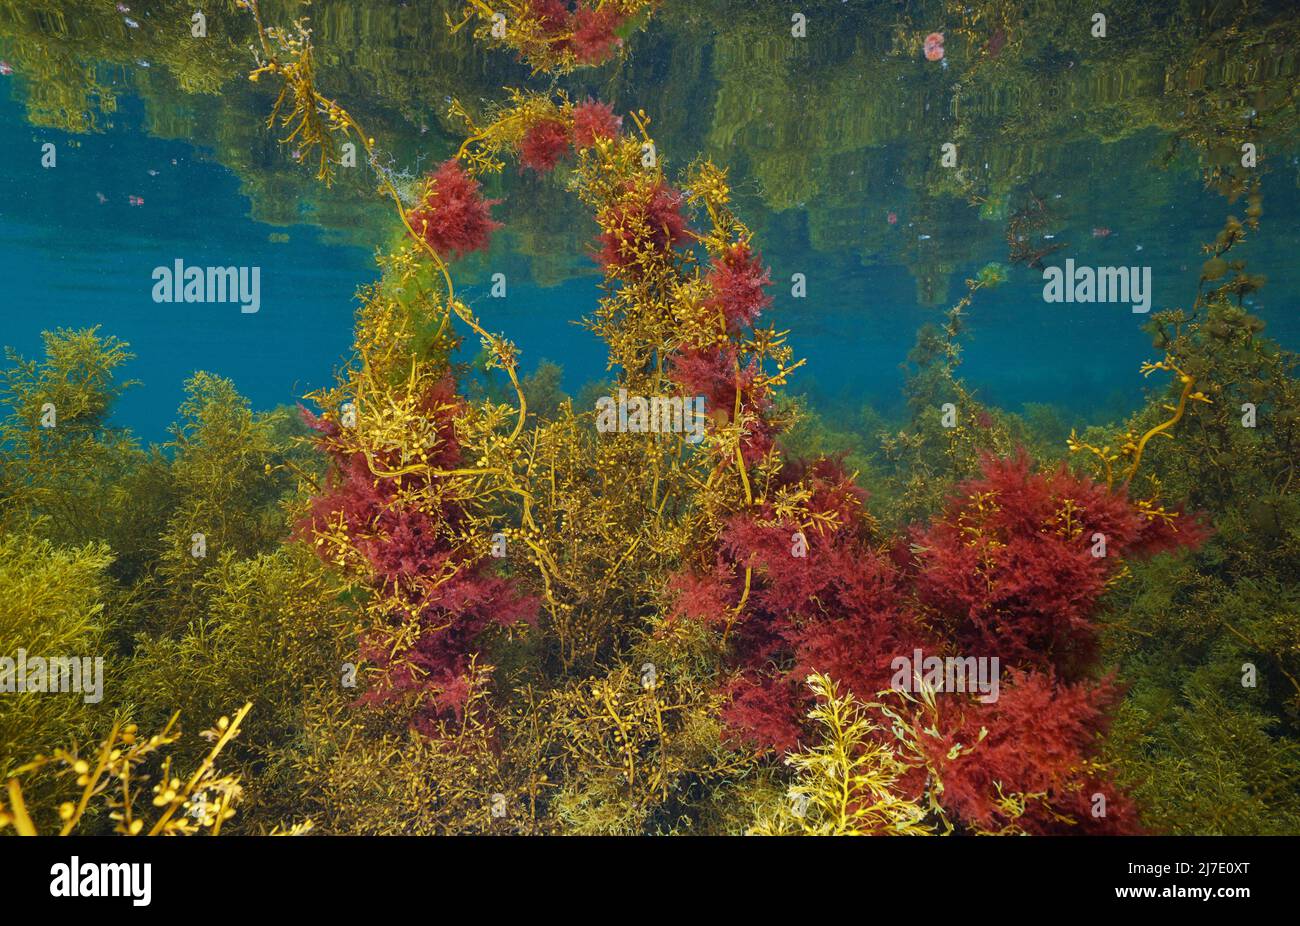 Algues marines brunes et rouges sous l'océan (principalement des mauvaises herbes japonaises et des harpons), algues de l'Atlantique est, Espagne Banque D'Images